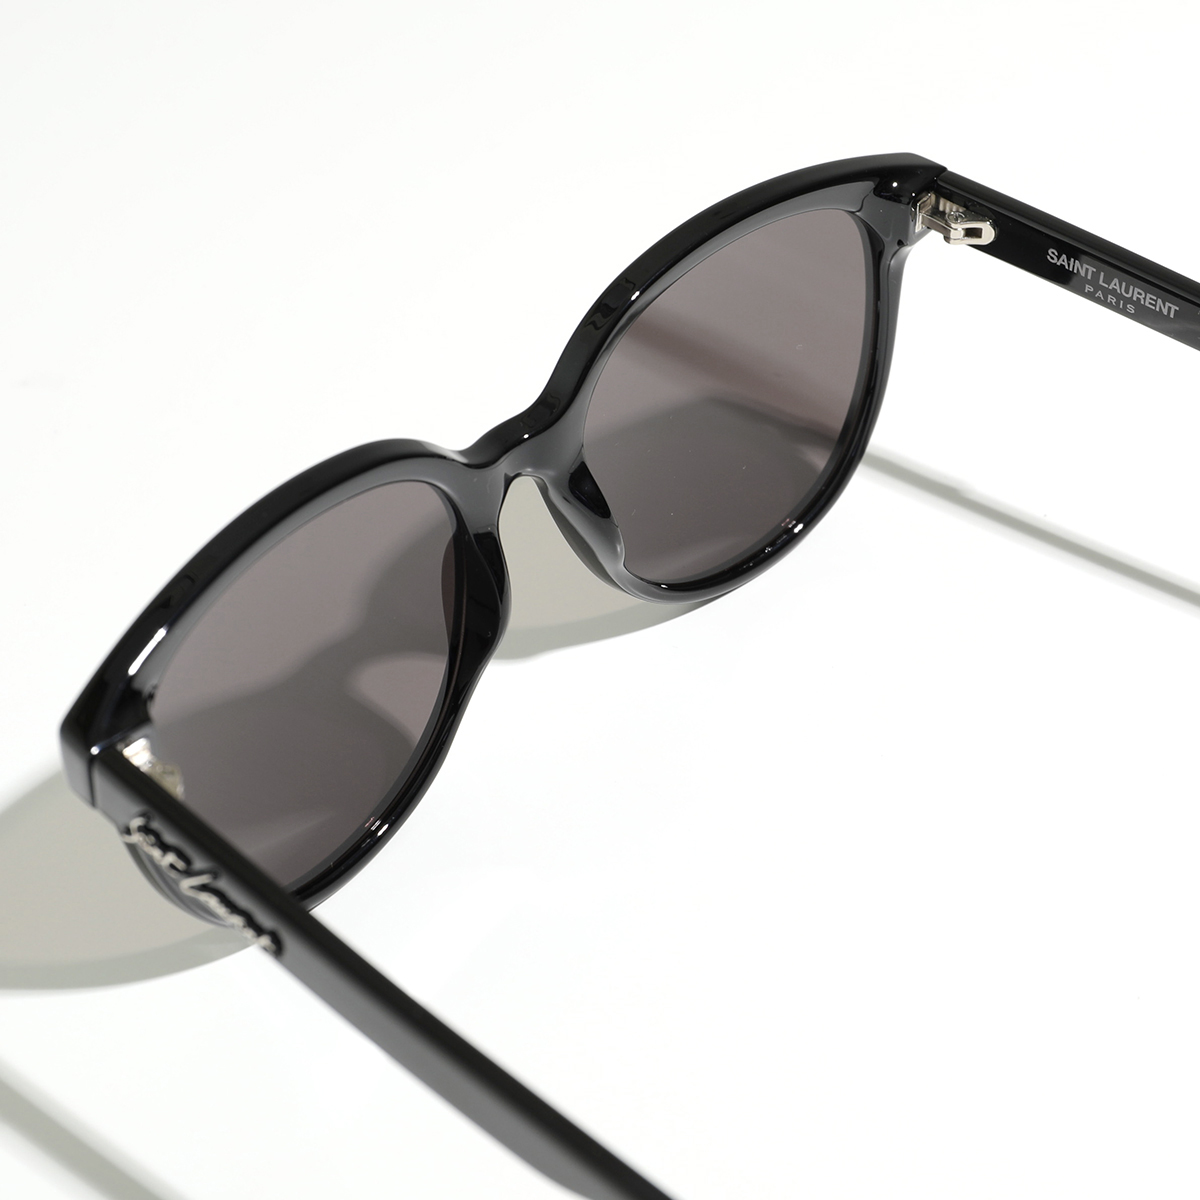 SAINT LAURENT サンローラン サングラス SL 317 メンズ ラウンド型 UVカット メガネ めがね 眼鏡 メタルロゴ アイウェア 001